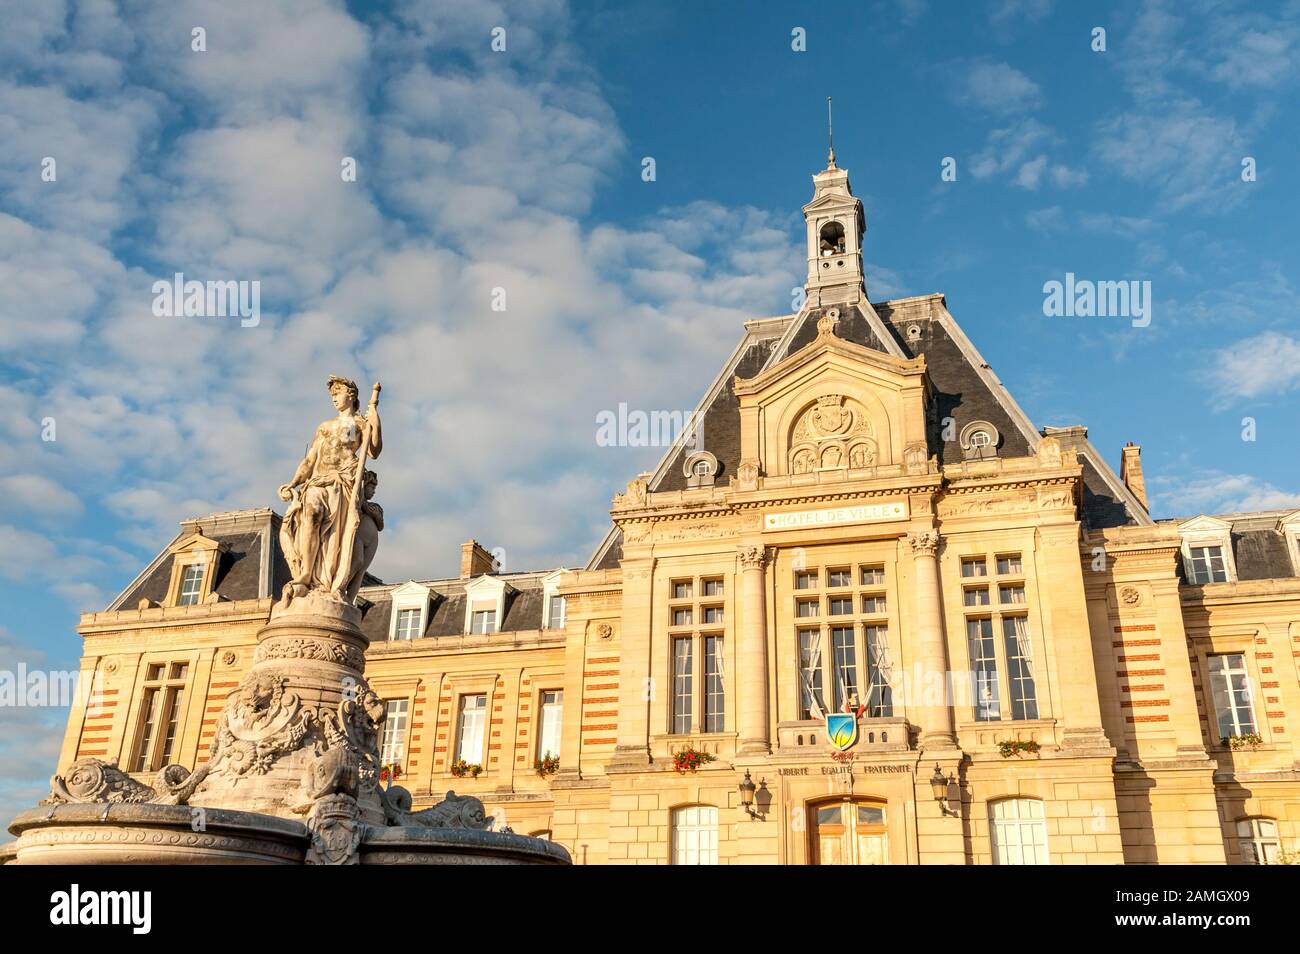 Hôtel de ville d'Evreux sur la place du général de Gaulle, capitale du département d'Eure, région normande de France Banque D'Images